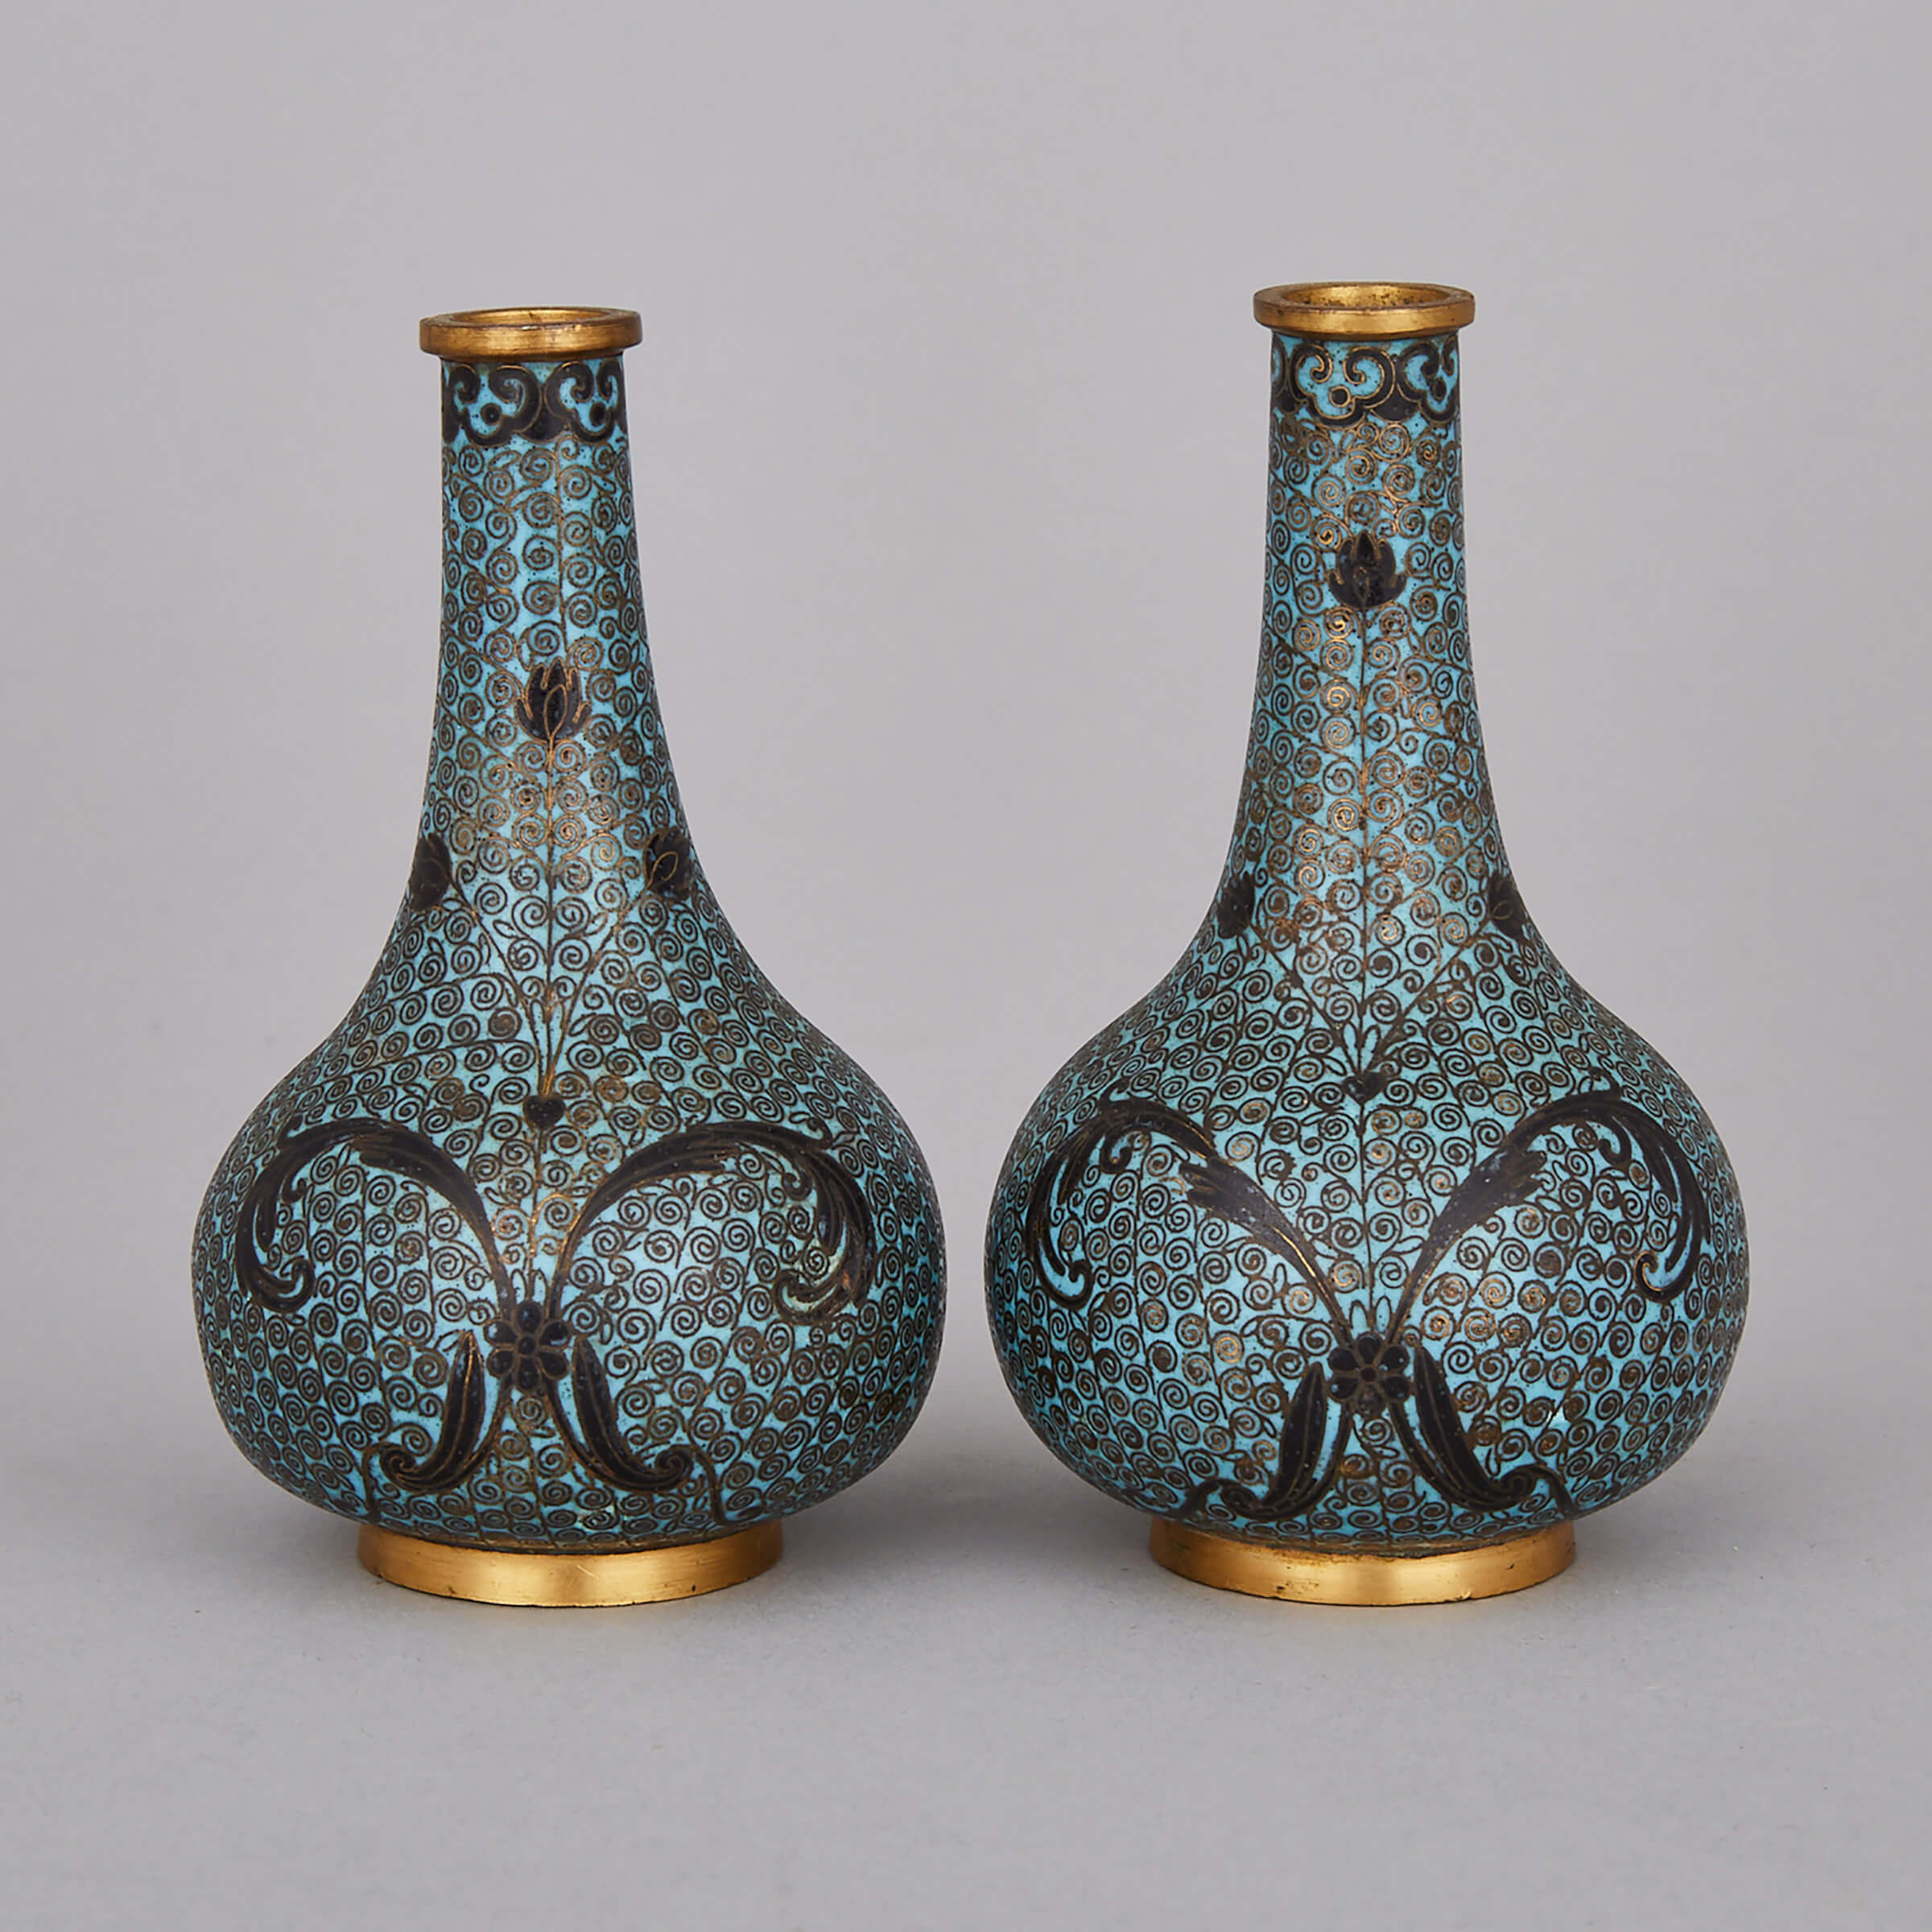 A Pair of Miniature Cloisonné Vases